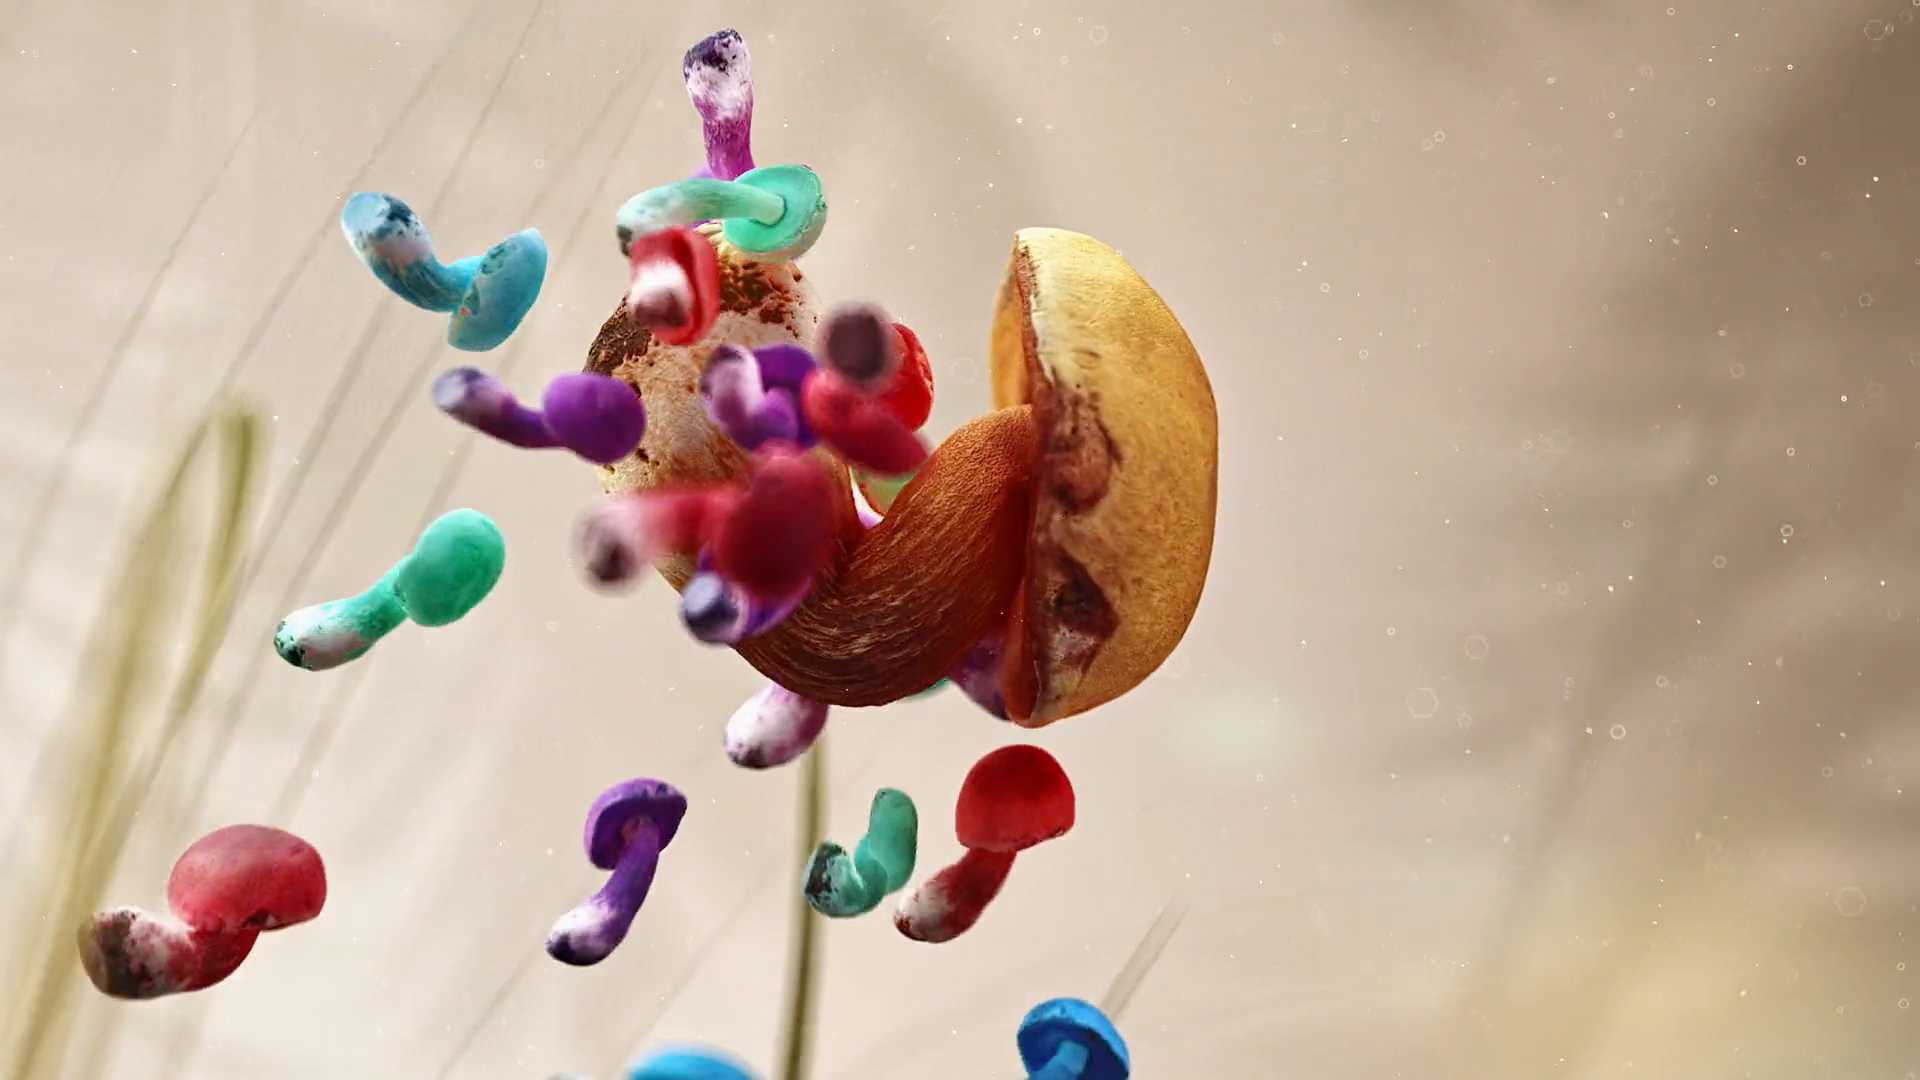 CG奇幻脑洞《欢迎来吃菌子的世界》